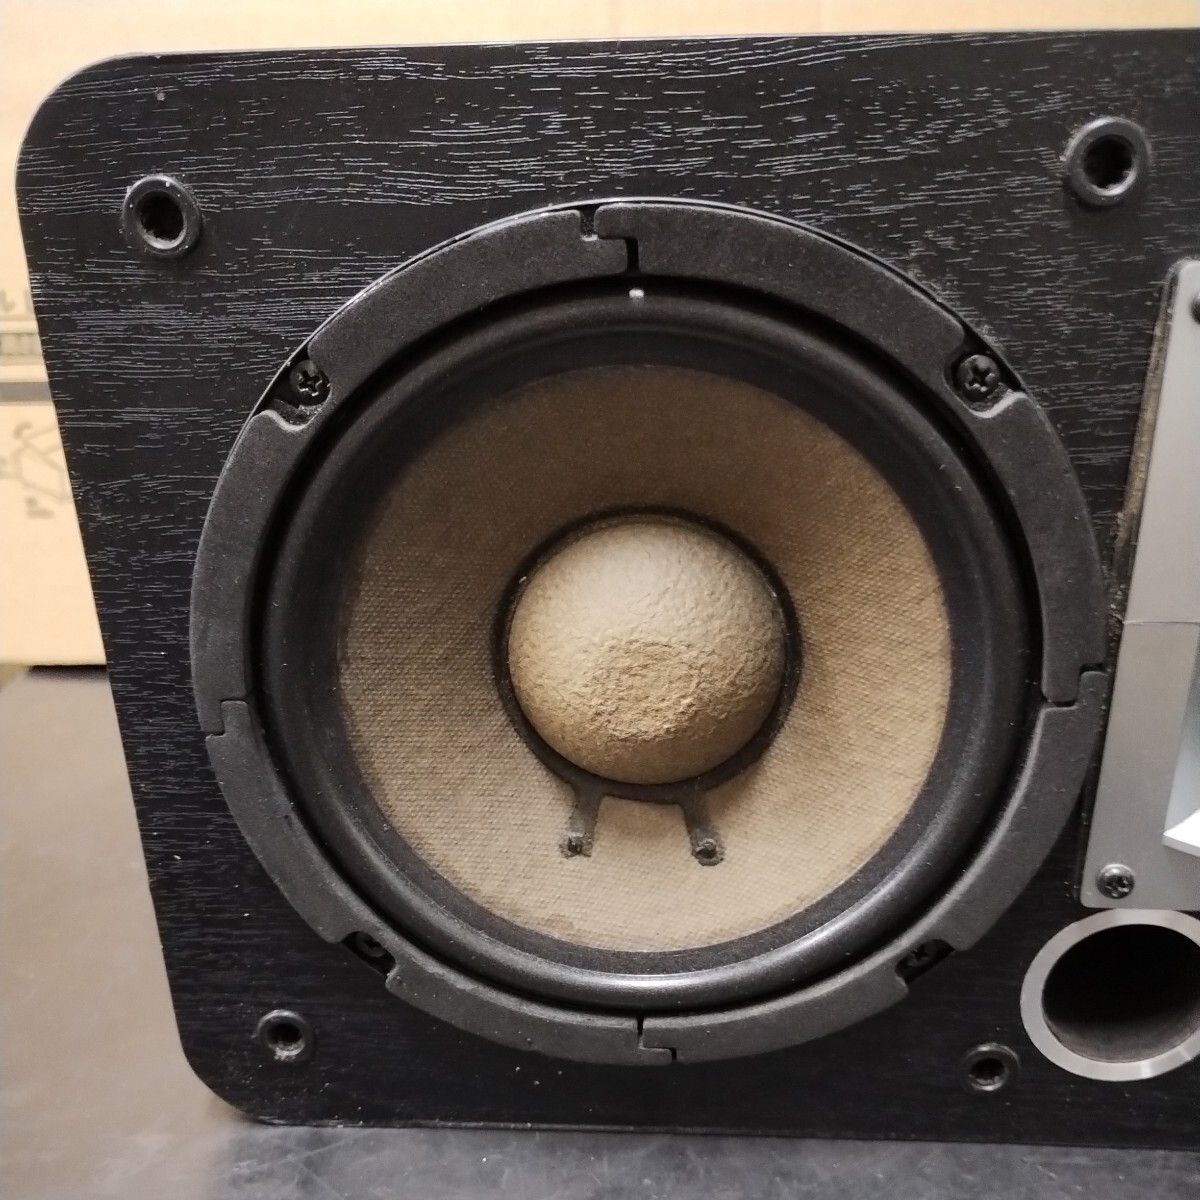 IFBI81 JOYSOUND×UGA Joy sound uga speaker CS-02 only one right side used inspection operation goods edge exchange 